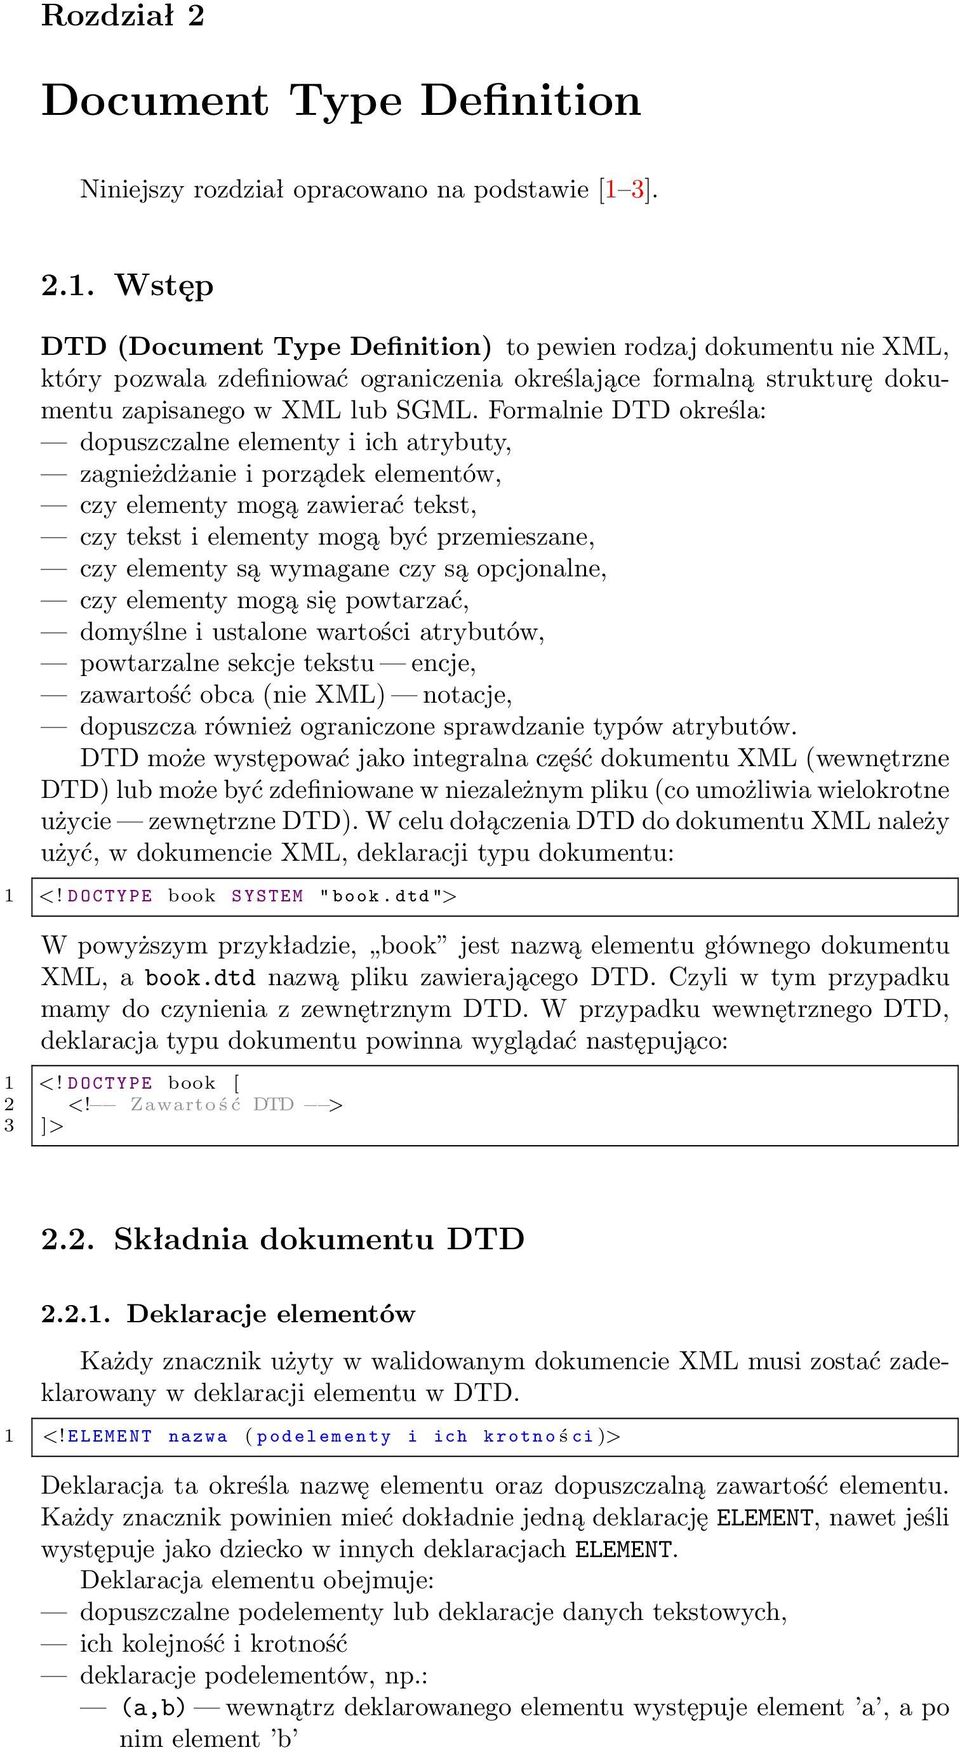 Formalnie DTD określa: dopuszczalne elementy i ich atrybuty, zagnieżdżanie i porządek elementów, czy elementy mogą zawierać tekst, czy tekst i elementy mogą być przemieszane, czy elementy są wymagane